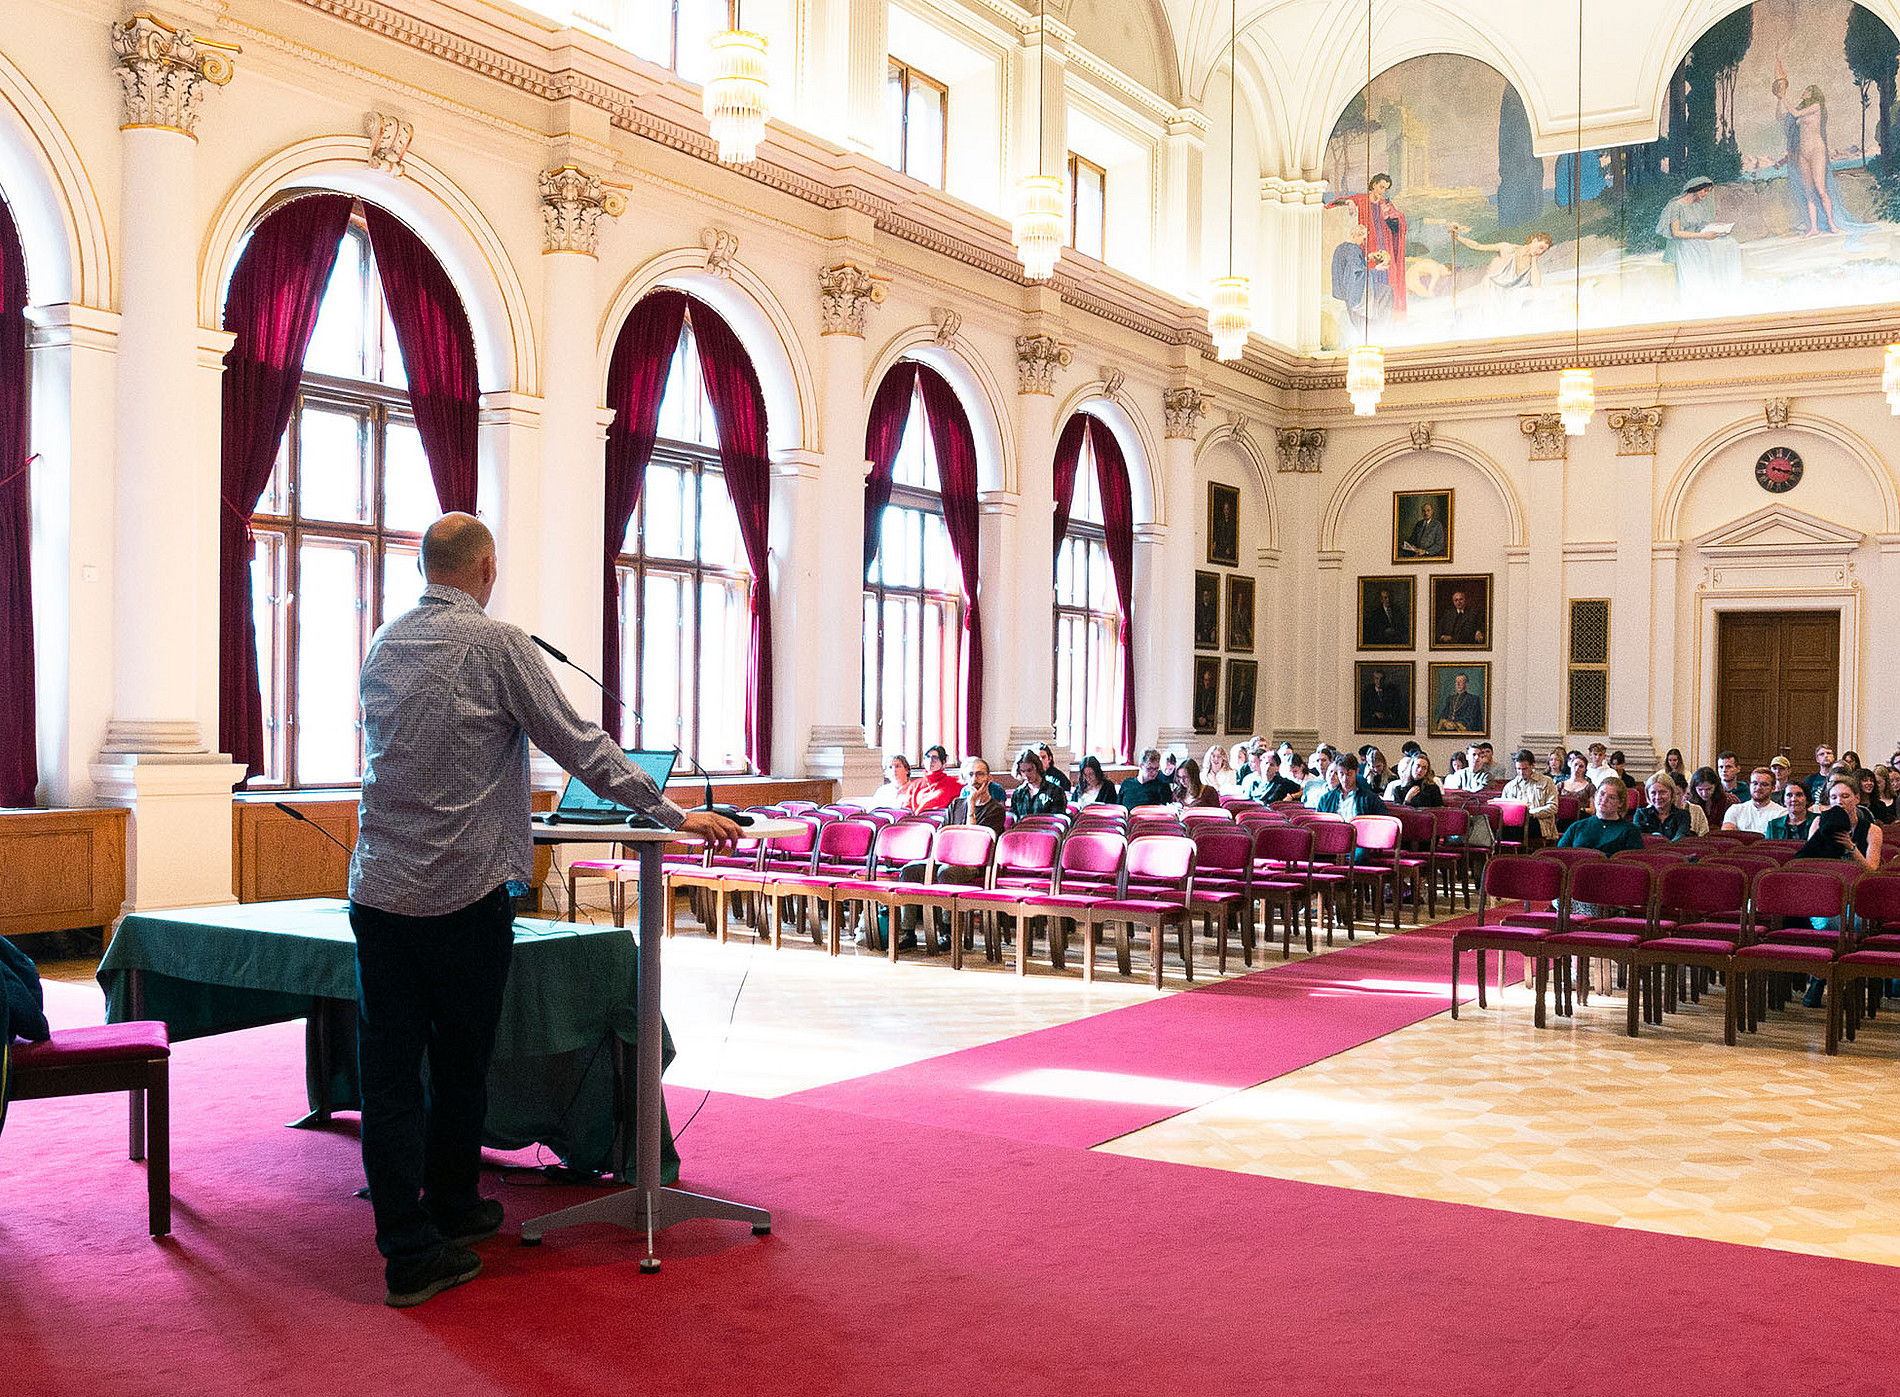 Ein Herr hält einen Vortrag in einem traditionellen Saal mit großen Fenstern. Die Stuhlreihen im Saal sind zur Hälfte mit Personen gefüllt. ©Uni Graz/Angele